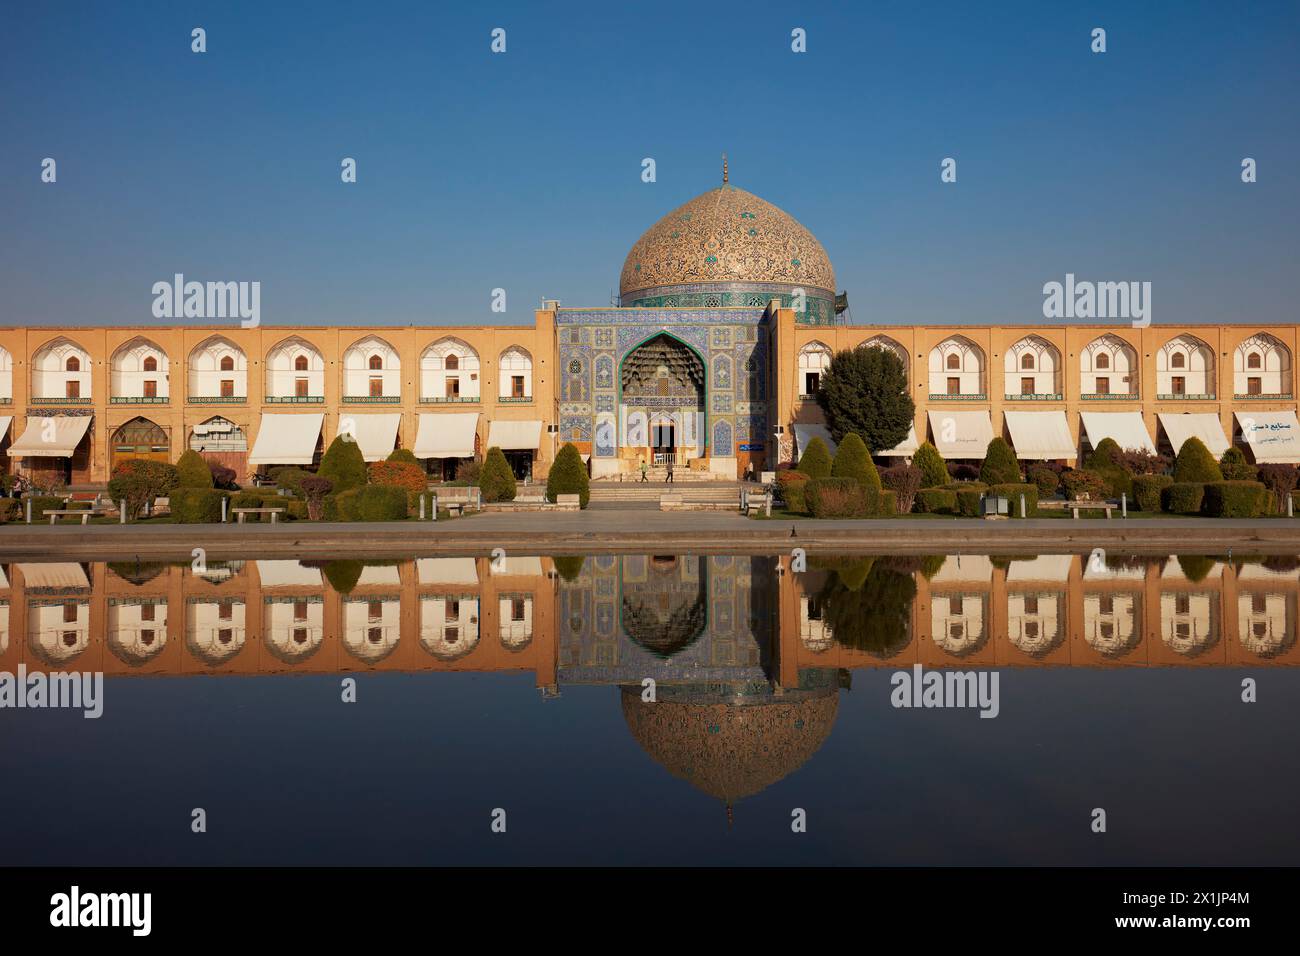 Frontalansicht der Lotfollah-Moschee, die sich in einem Wasserbecken spiegelt. Naqsh-e Jahan-Platz, Isfahan, Iran. Stockfoto